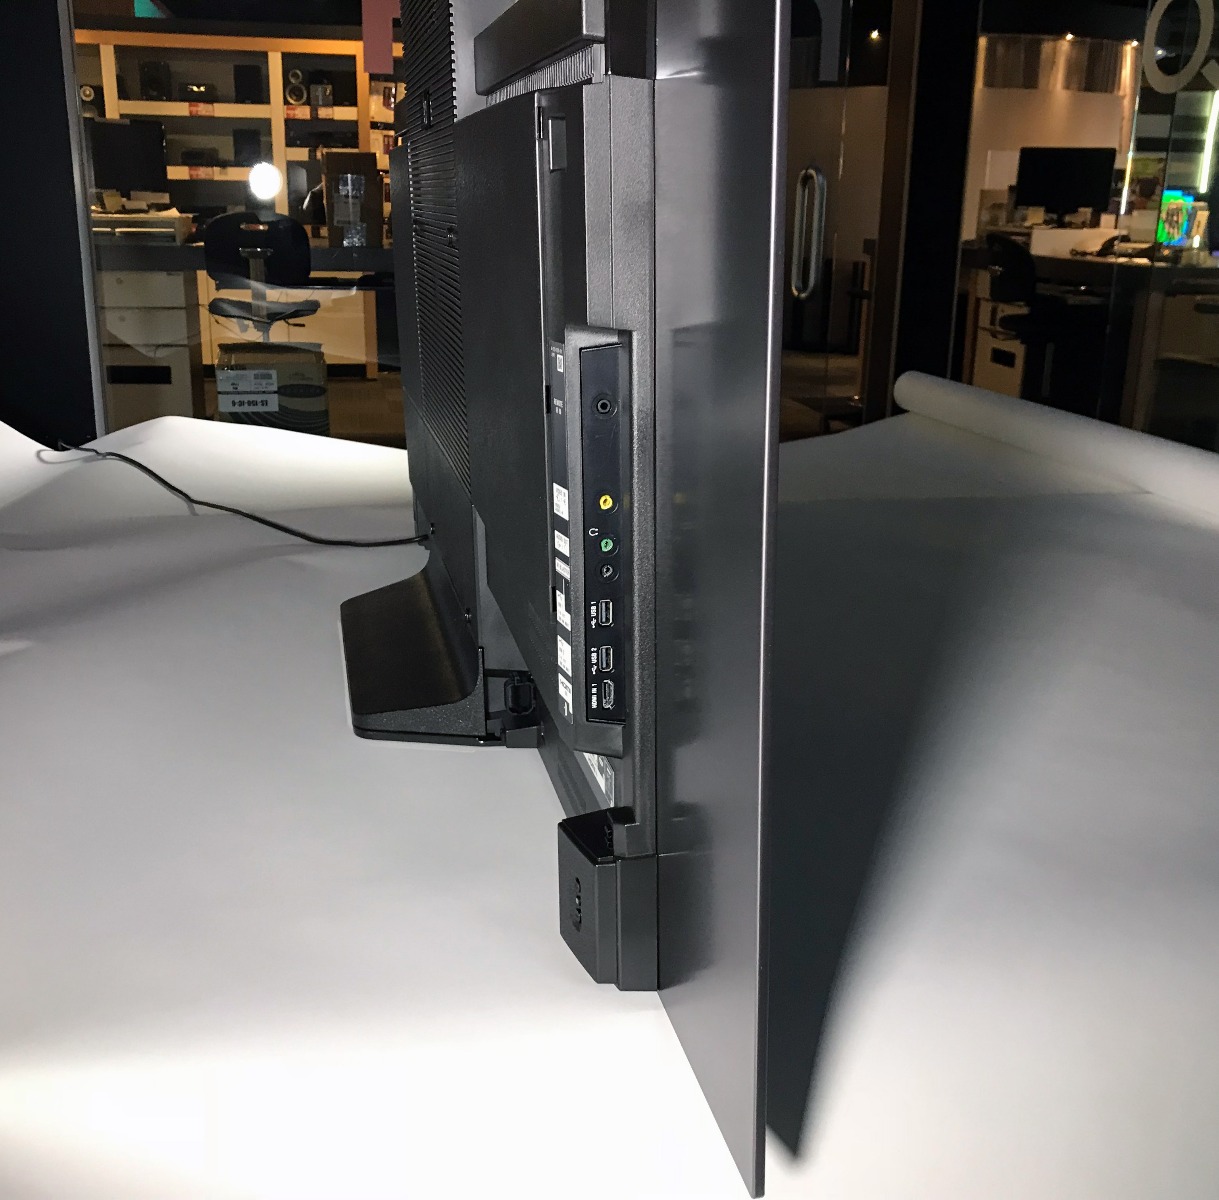 Les connexions possible pour le téléviseur OLED Sony XBR A8F